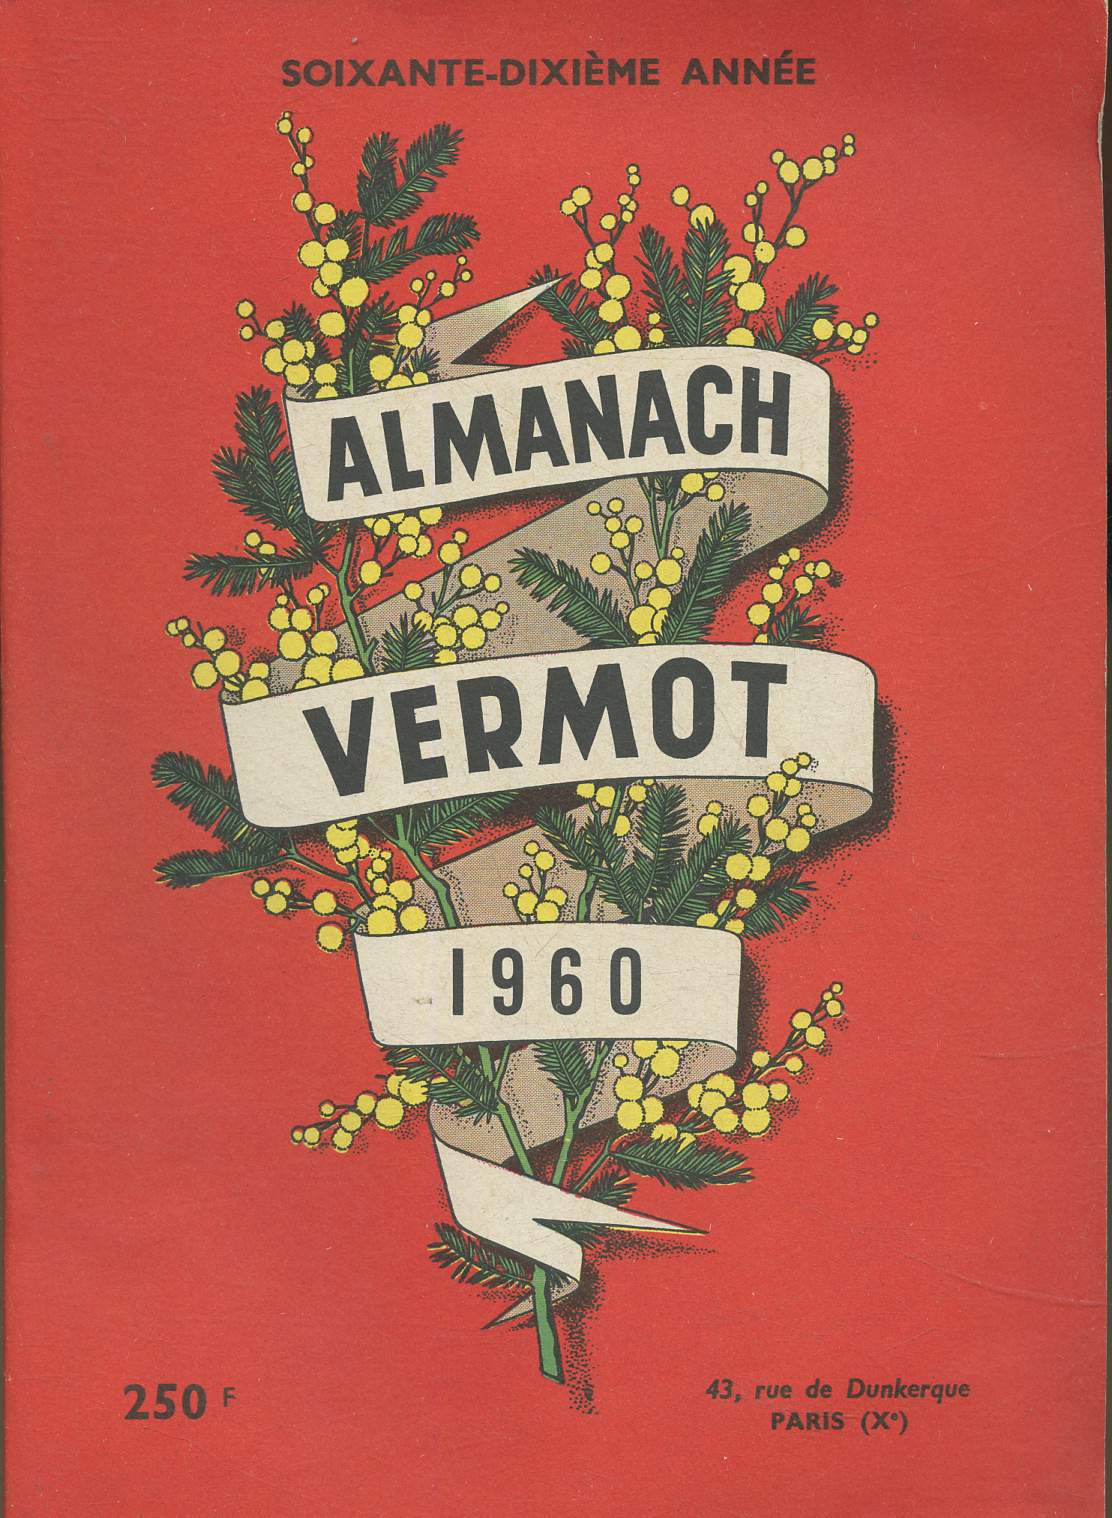 Almanach Vermot 1960 (soixante dixime anne) : Les miracles de la Chiropractie - Les traitements modernes des fractures - L'histoire du franc - etc